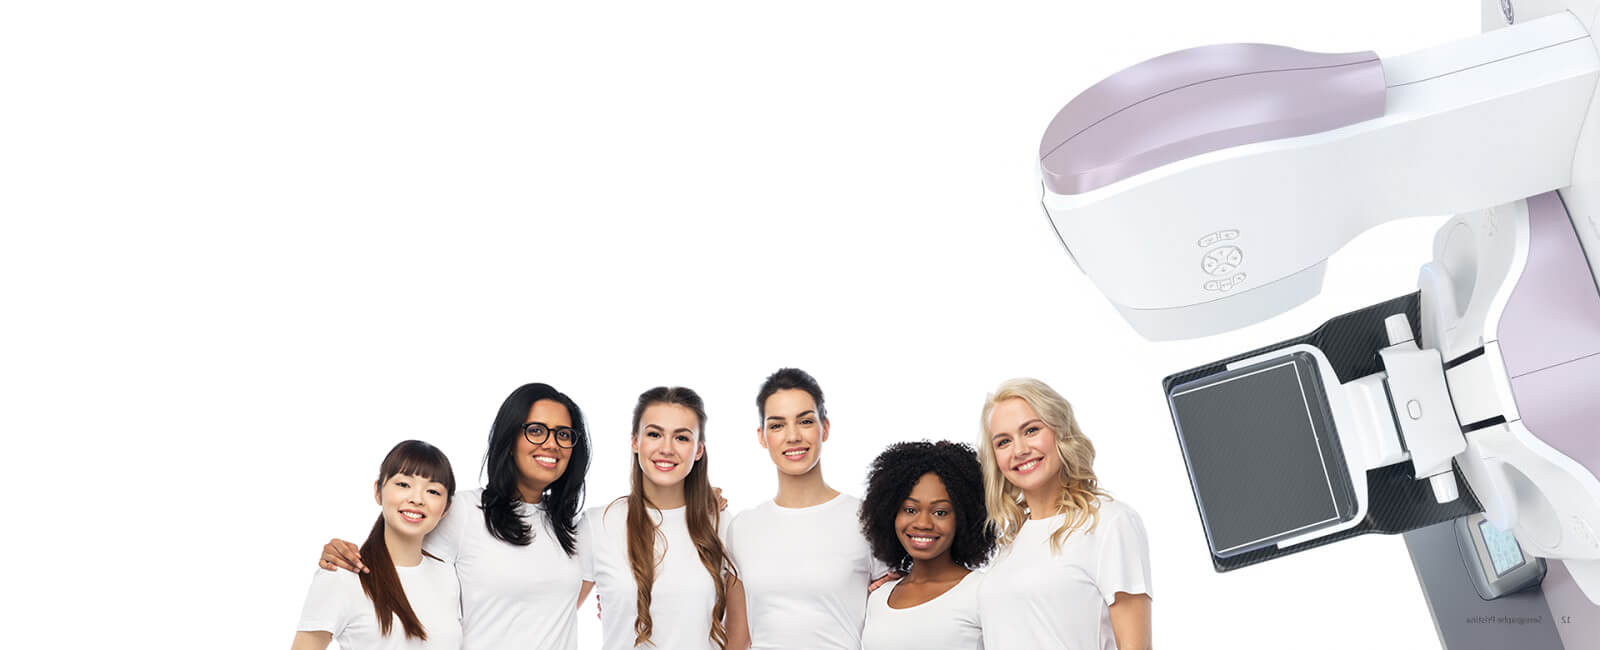 diverse women mammogram center